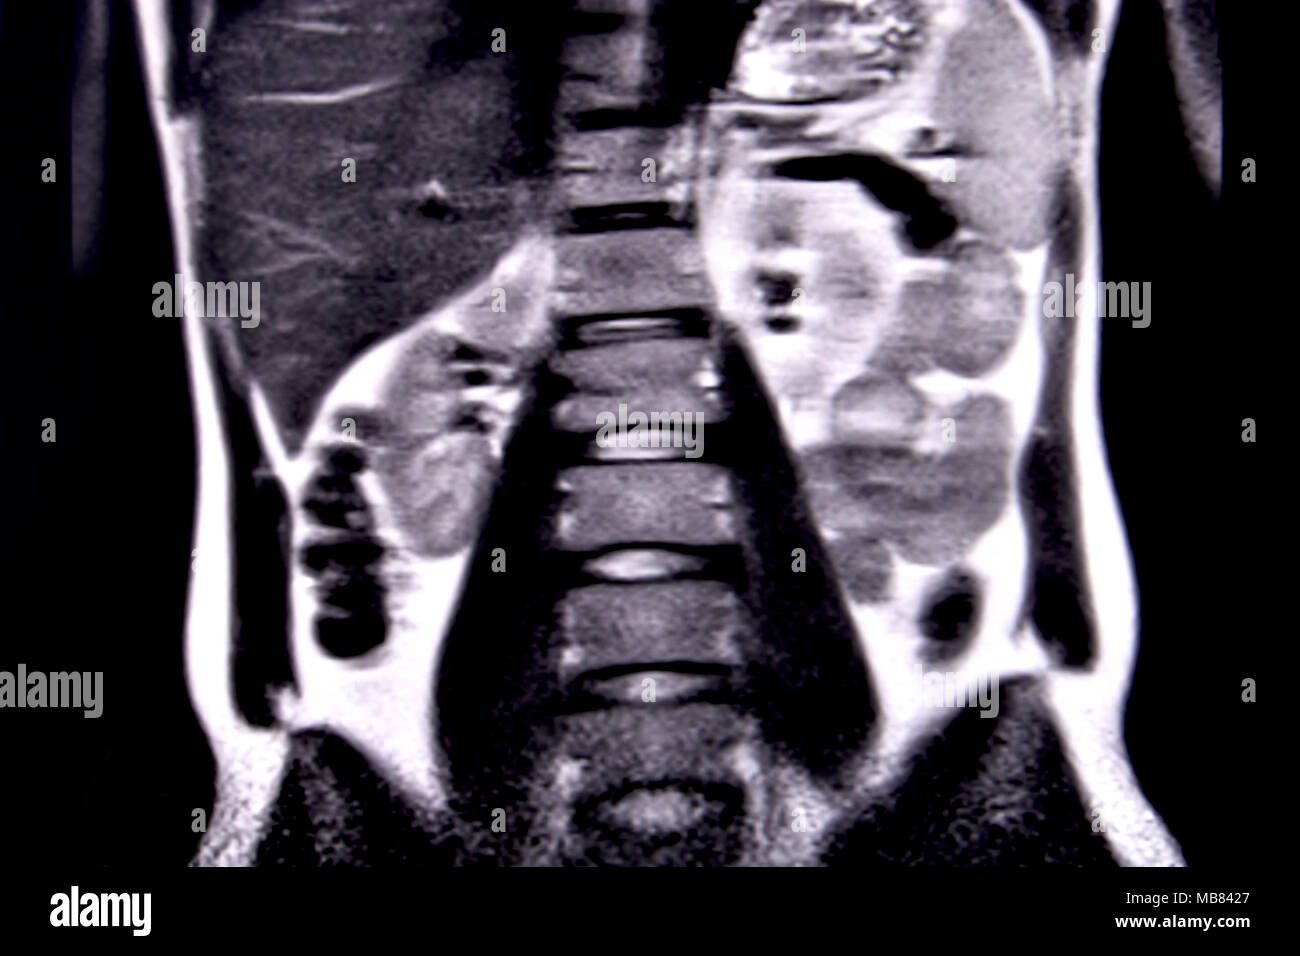 Viaje a través del abdomen y el tórax humano por medio de la resonancia magnética de 18 cortes coronales (ver). Imagen 8/18 Foto de stock